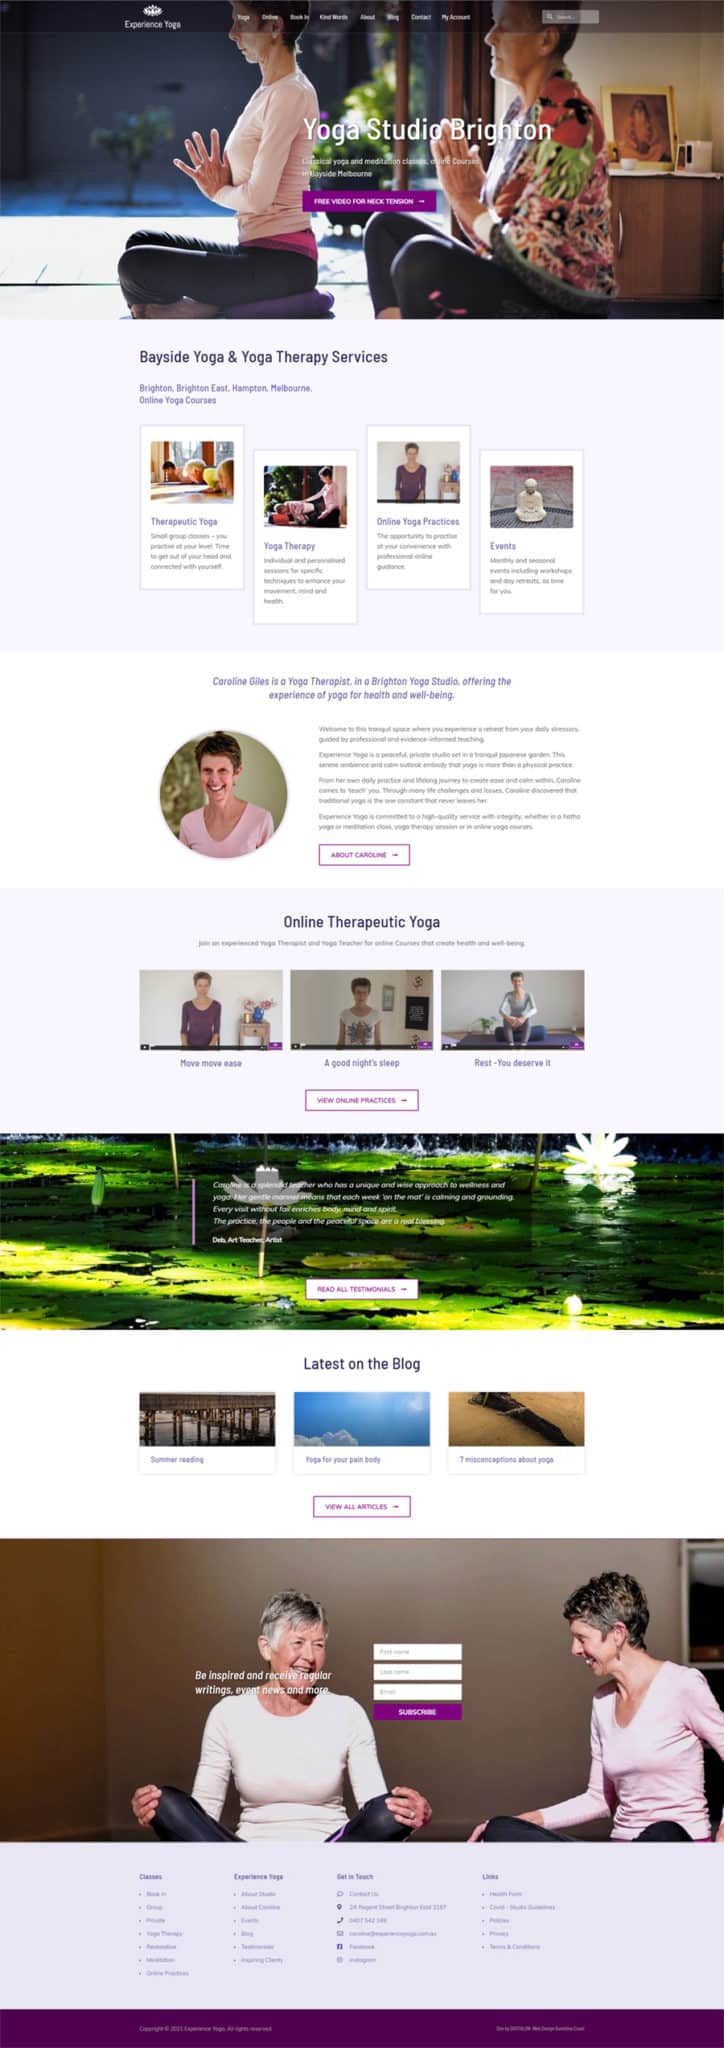 Yoga studio Brighton website redesign